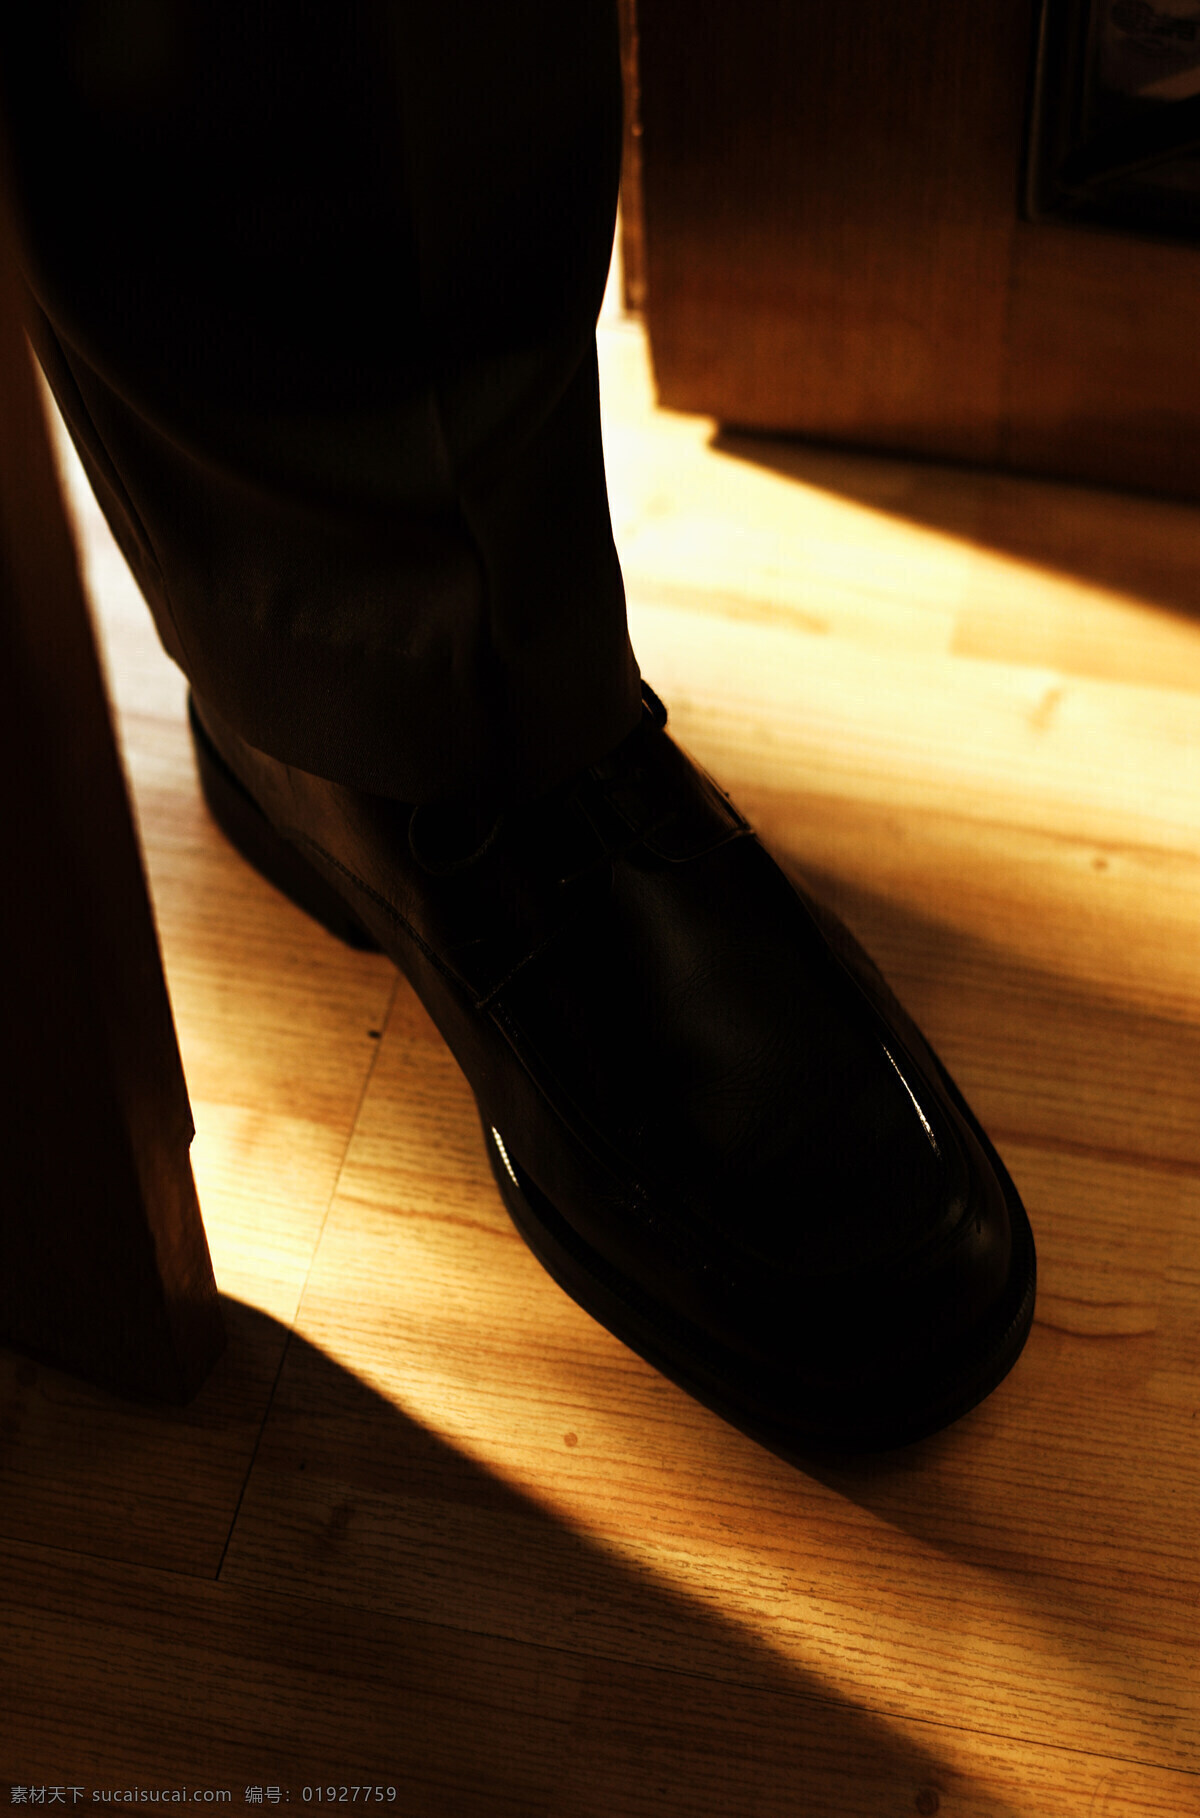 男人 脚部 特写 室内 光线 阴影 脚 皮鞋 黑色皮鞋 男士 男人的脚 商业创意 高清图片 人体器官图 人物图片